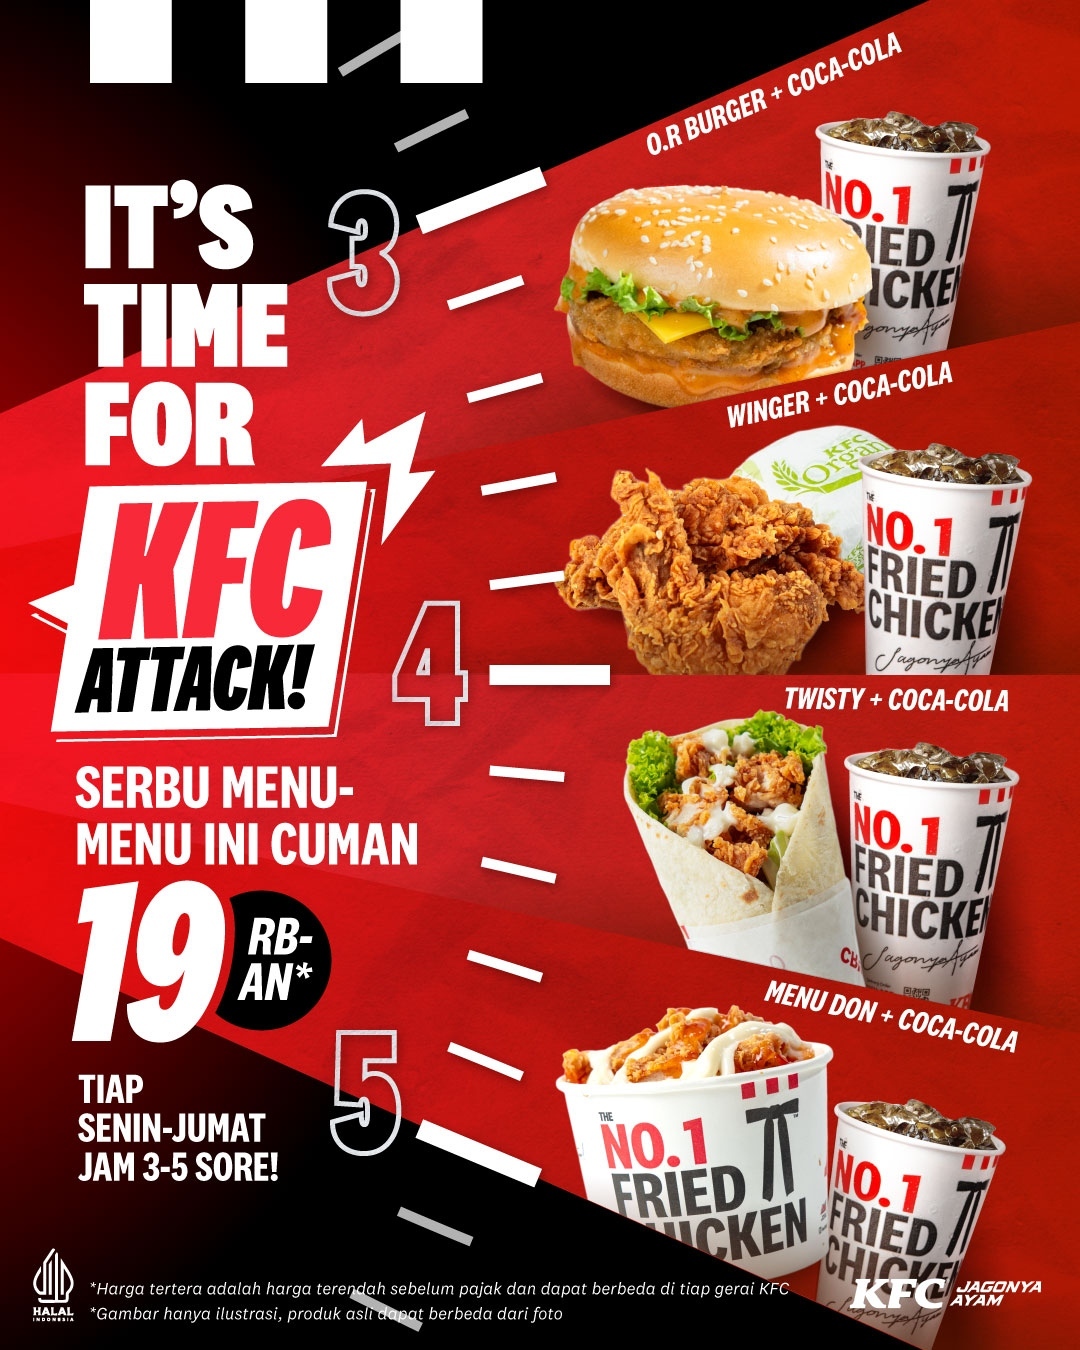 PROMO KFC ATTACK MULAI RP. 19RIBUAN AJA PER MENU